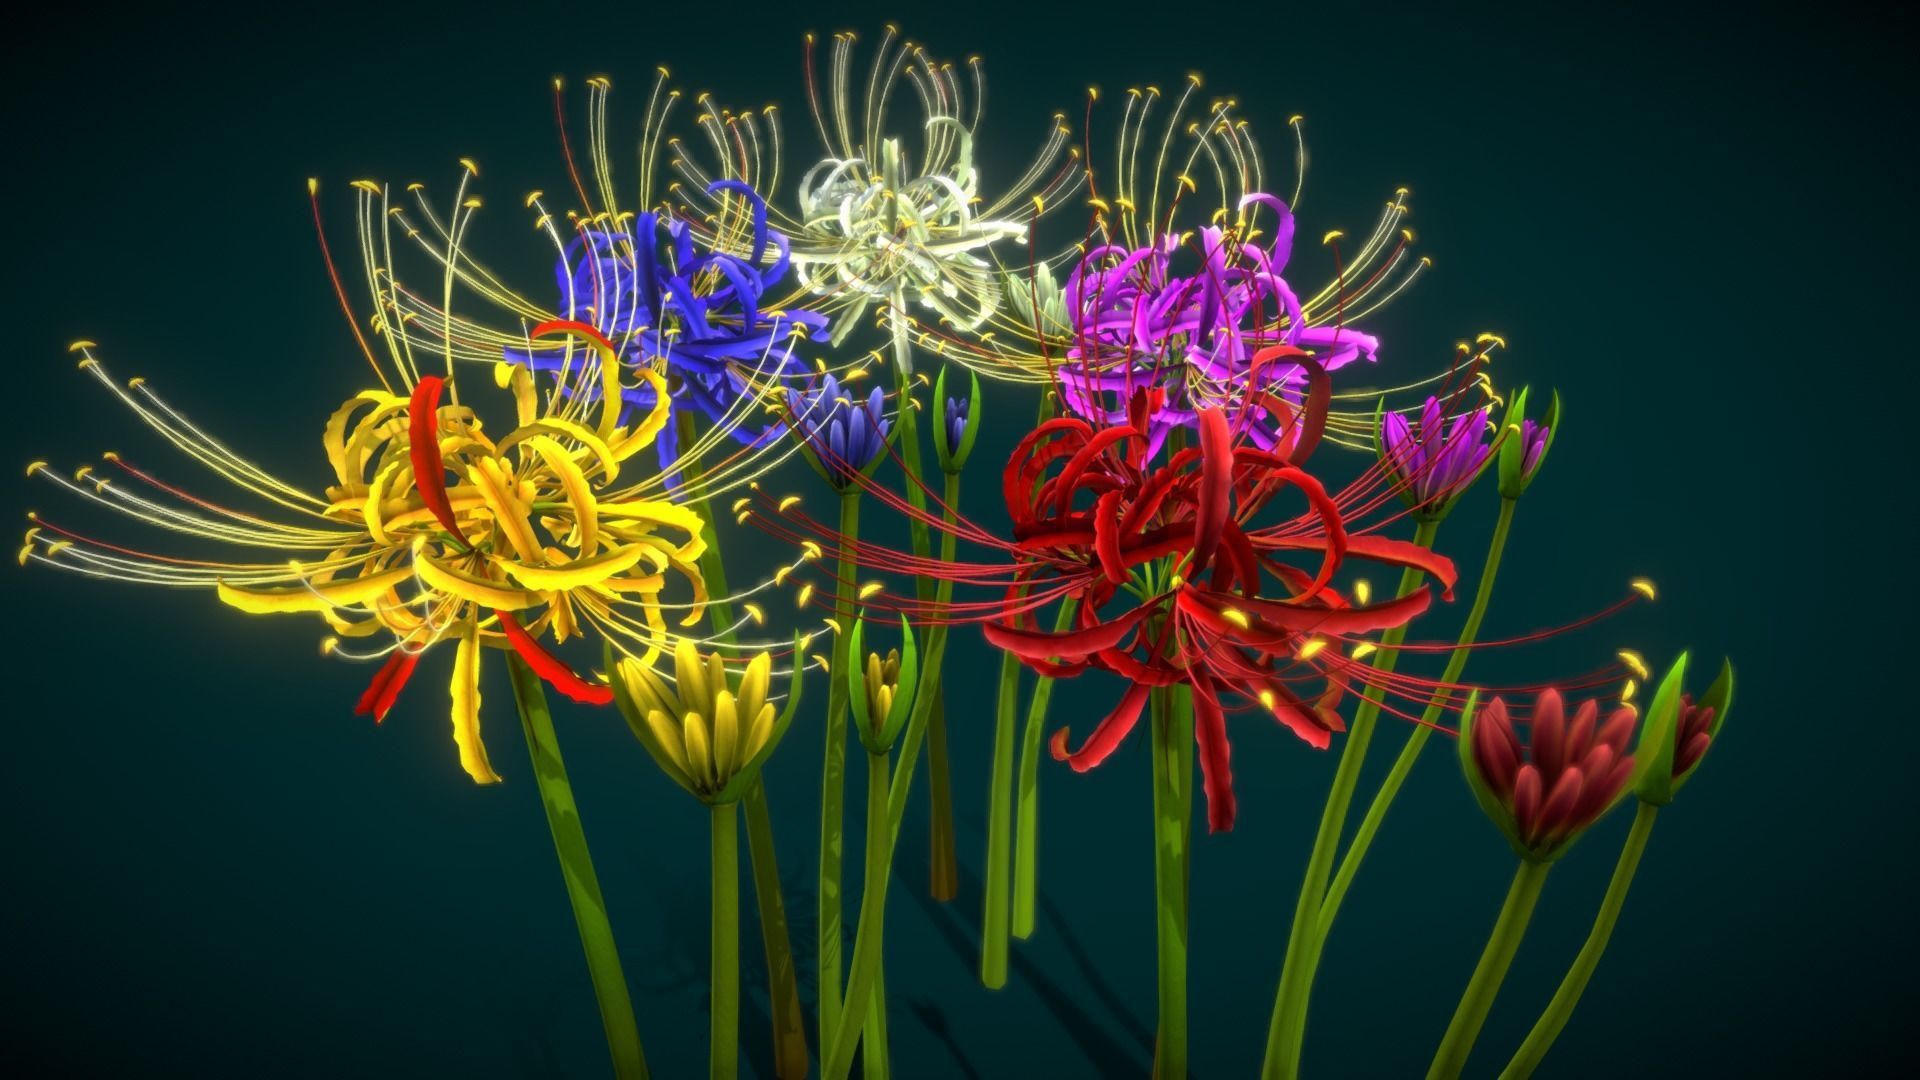 Hơn 1000 mẫu hình nền hoa bỉ ngạn xanh tự nhiên và đẹp mắt